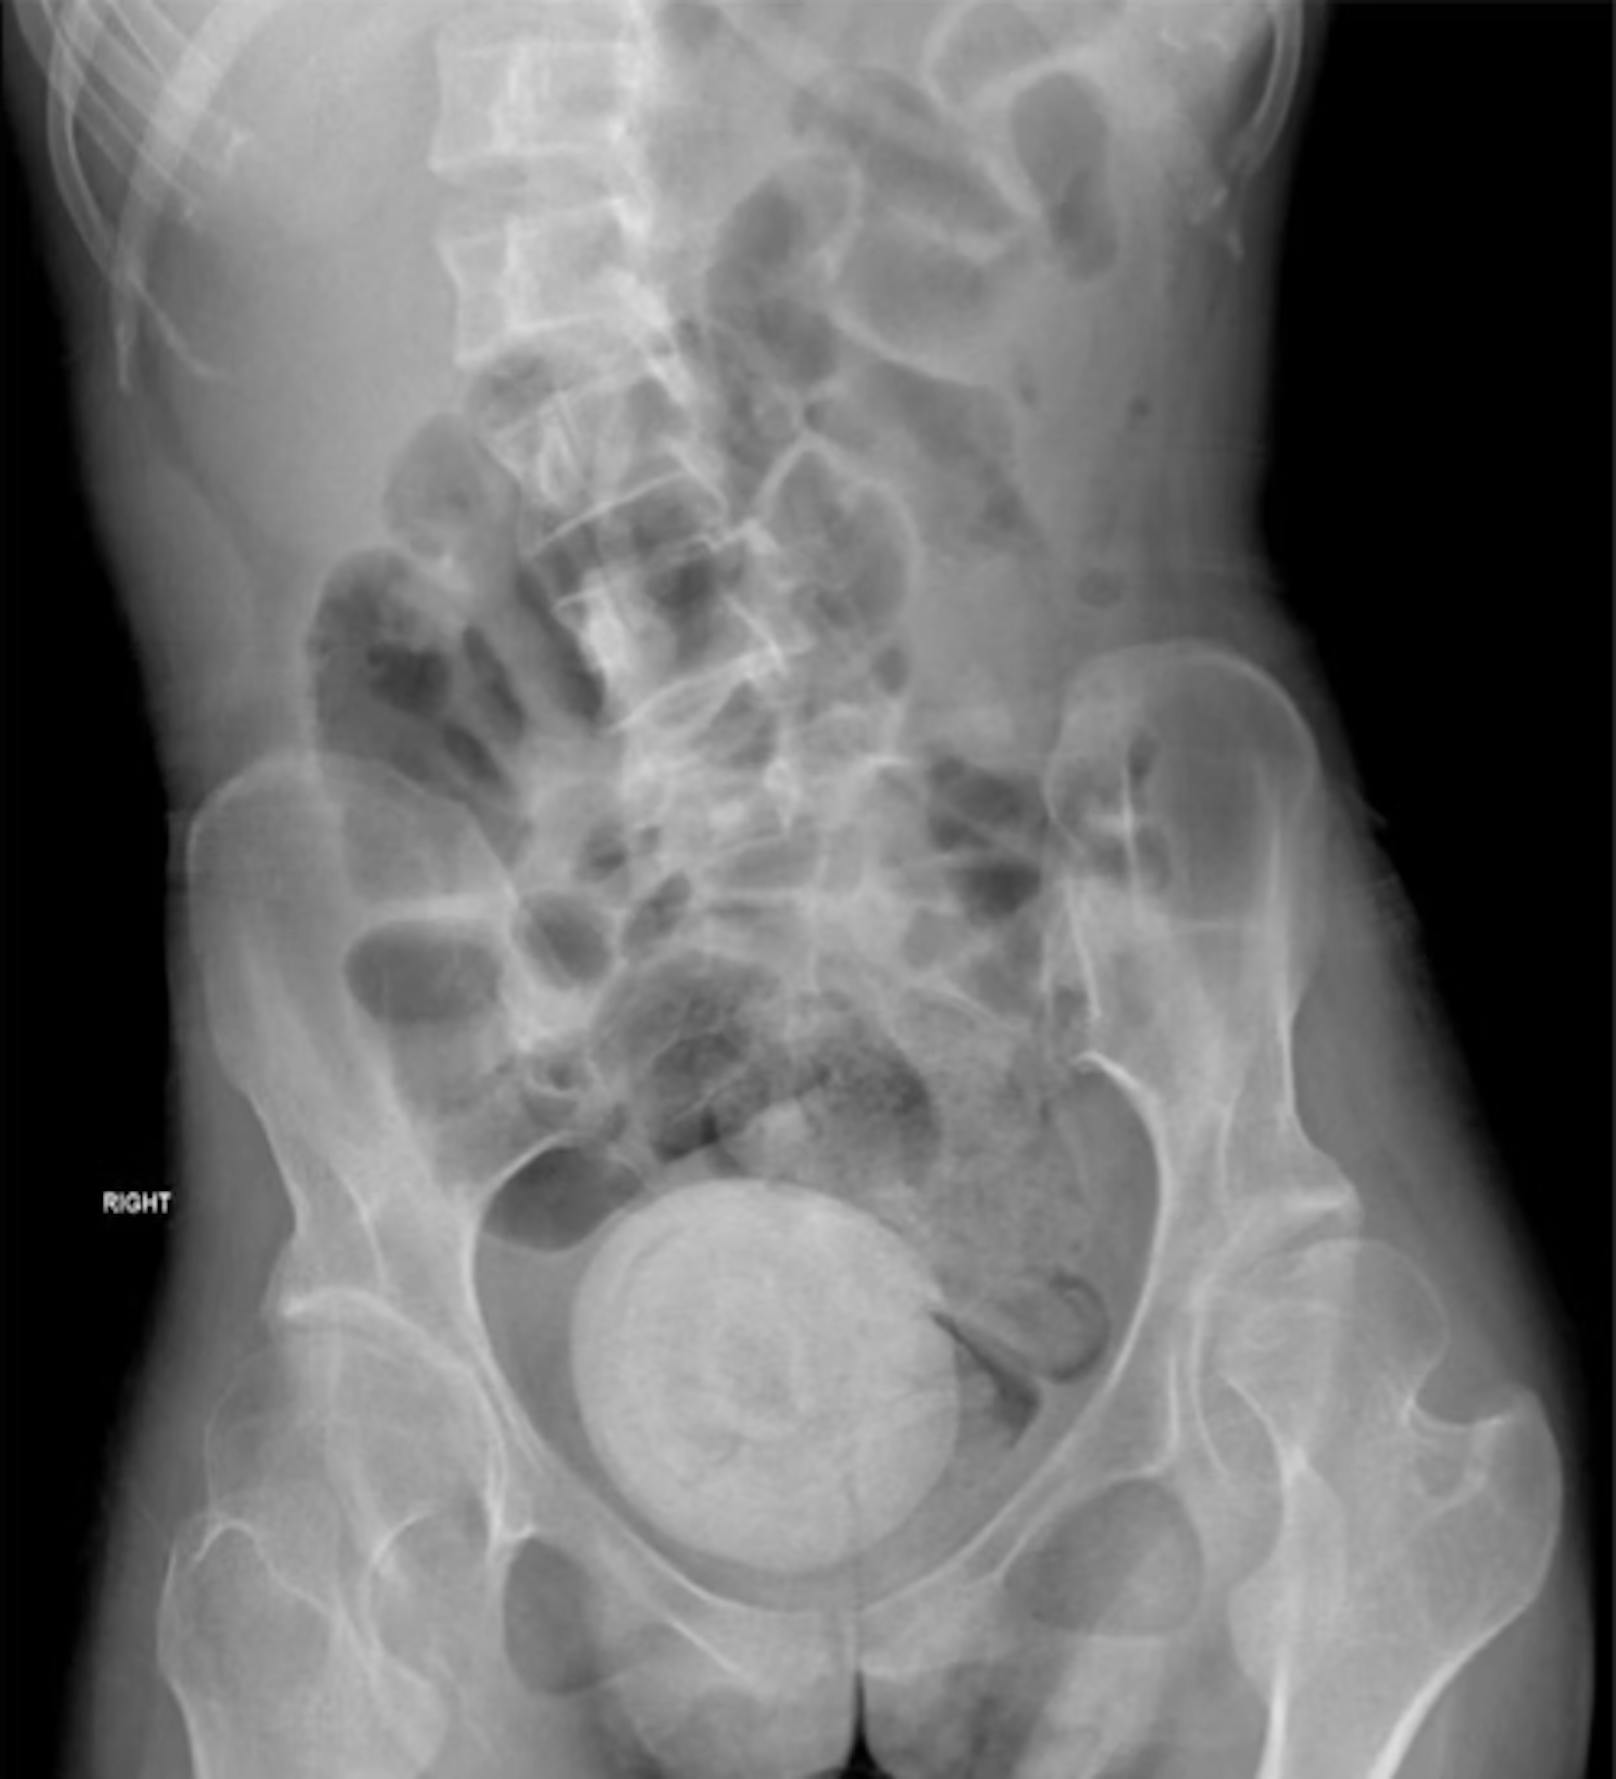 Das Röntgenbild zeigt den 9x10 cm großen Fremdkörper im Unterleib der Patientin.